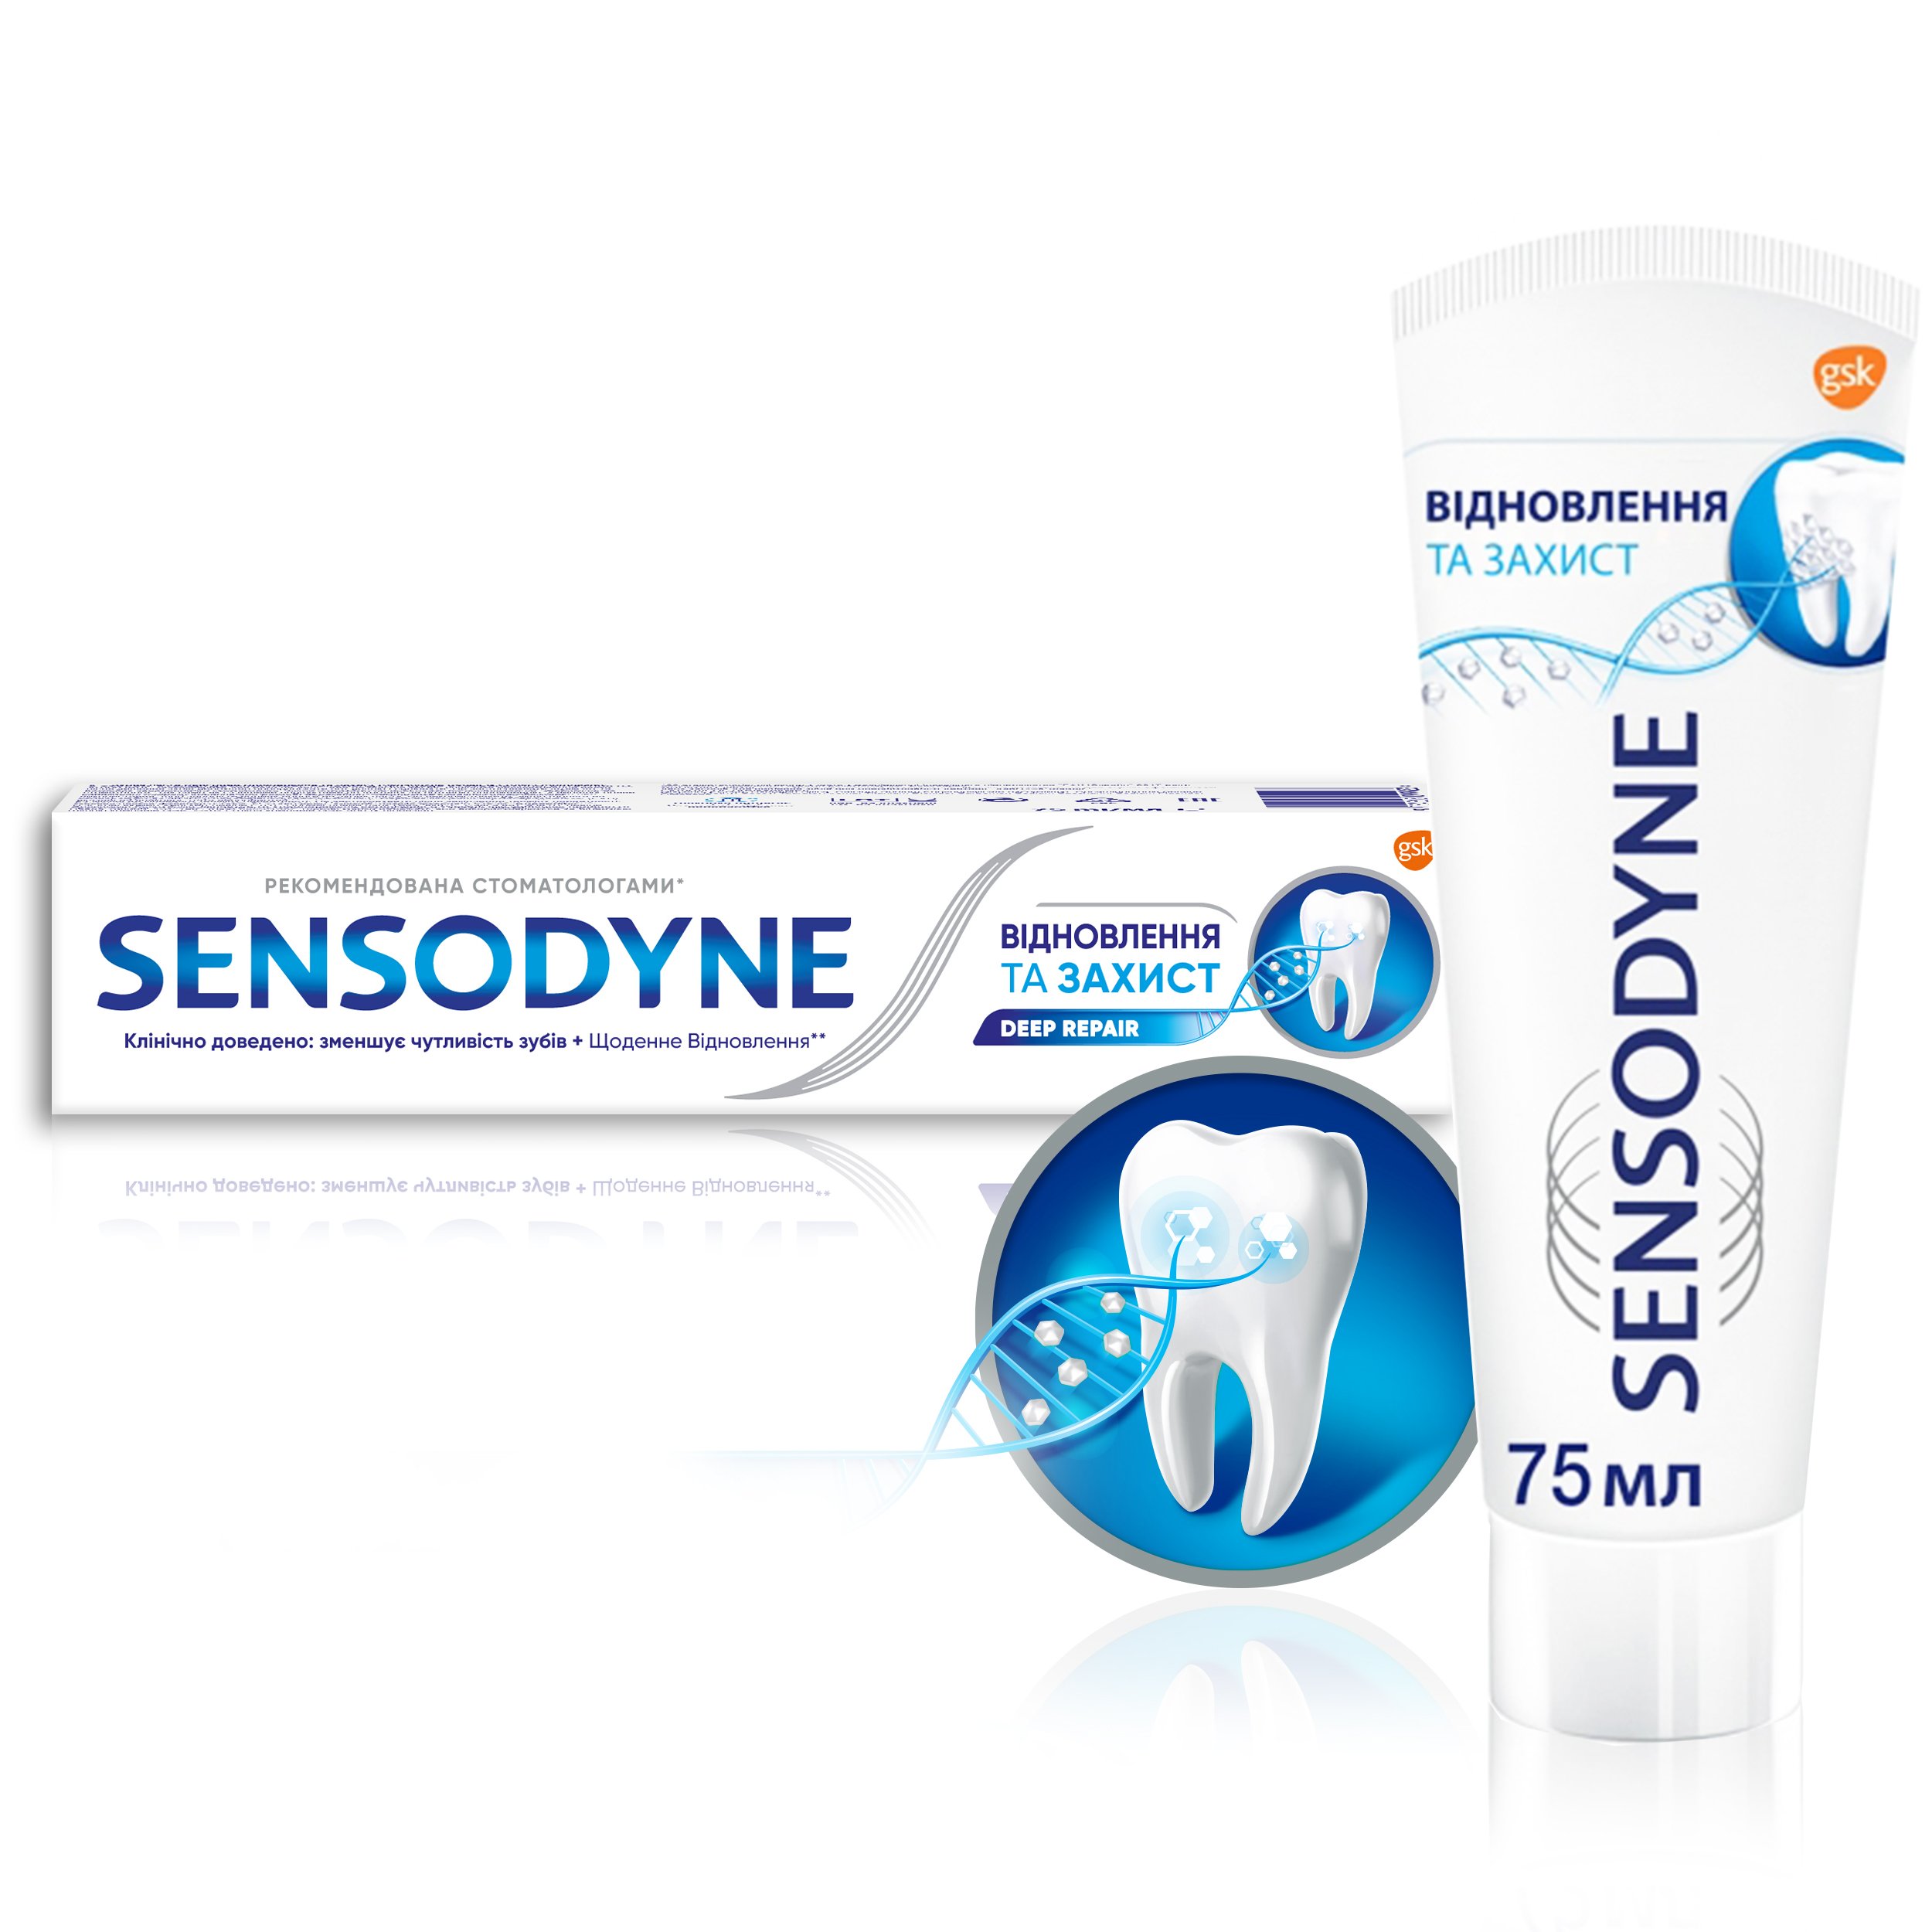 Зубна паста Sensodyne Відновлення та Захист, 75 мл - фото 6